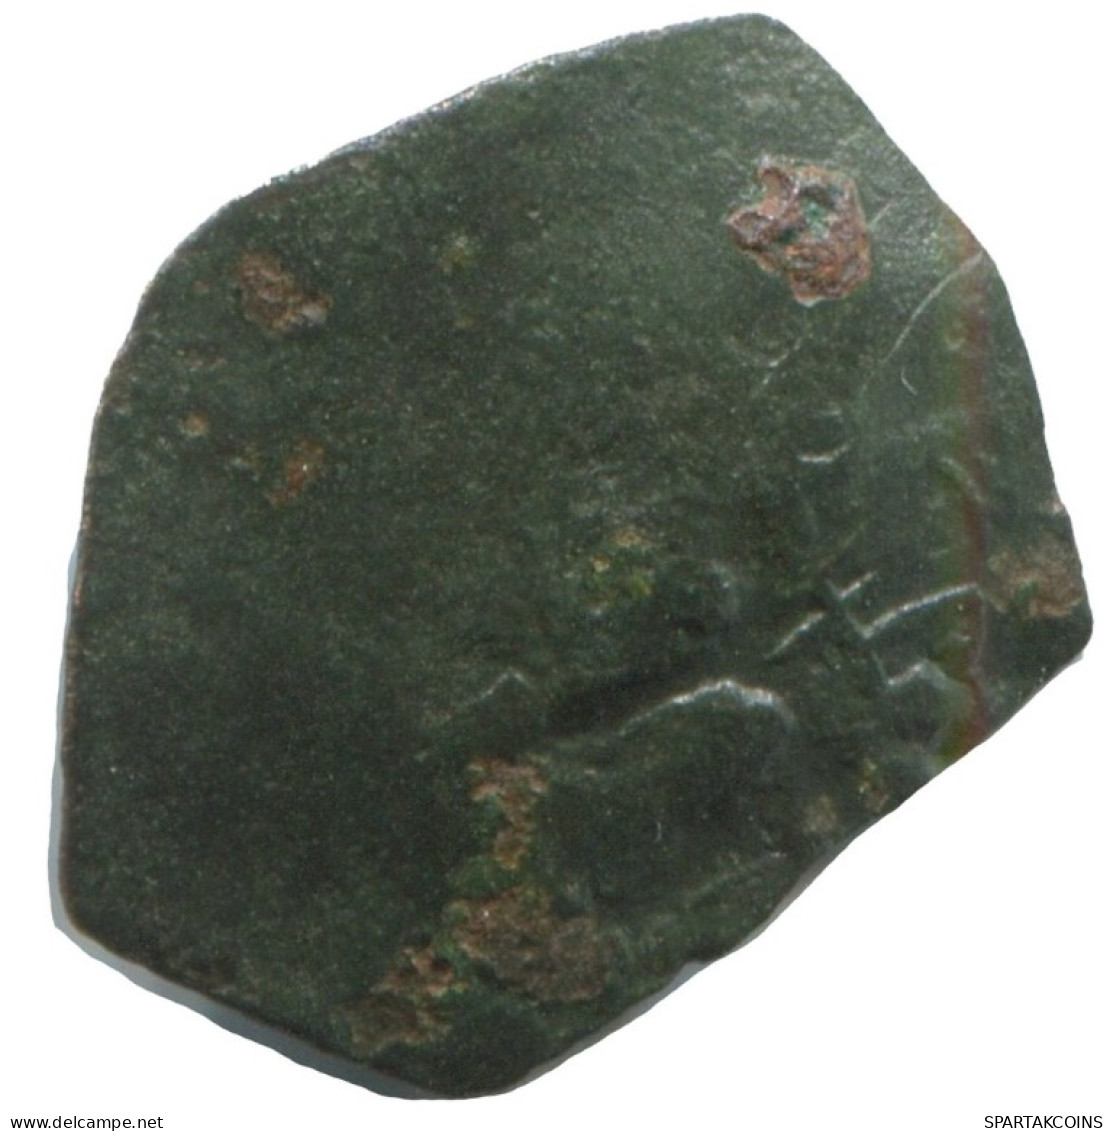 Authentic Original Ancient BYZANTINE EMPIRE Coin 0.4g/16mm #AG747.4.U.A - Bizantinas